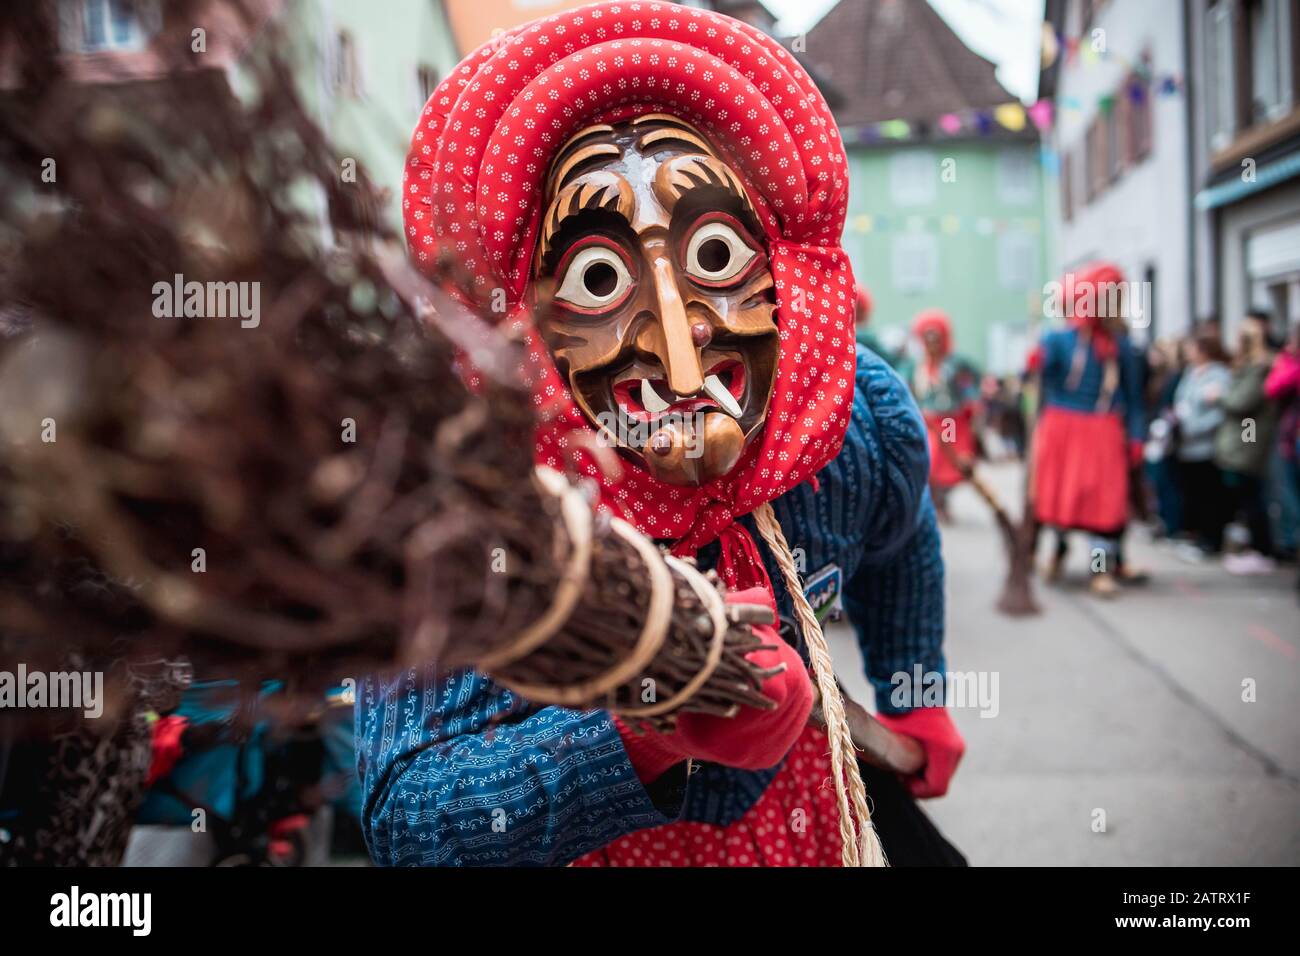 Kandel sorcière de Waldkirch - sorcière drôle avec un foulard rouge, soulève le balai. Lors de la parade du carnaval à Staufen, dans le sud de l'Allemagne Banque D'Images